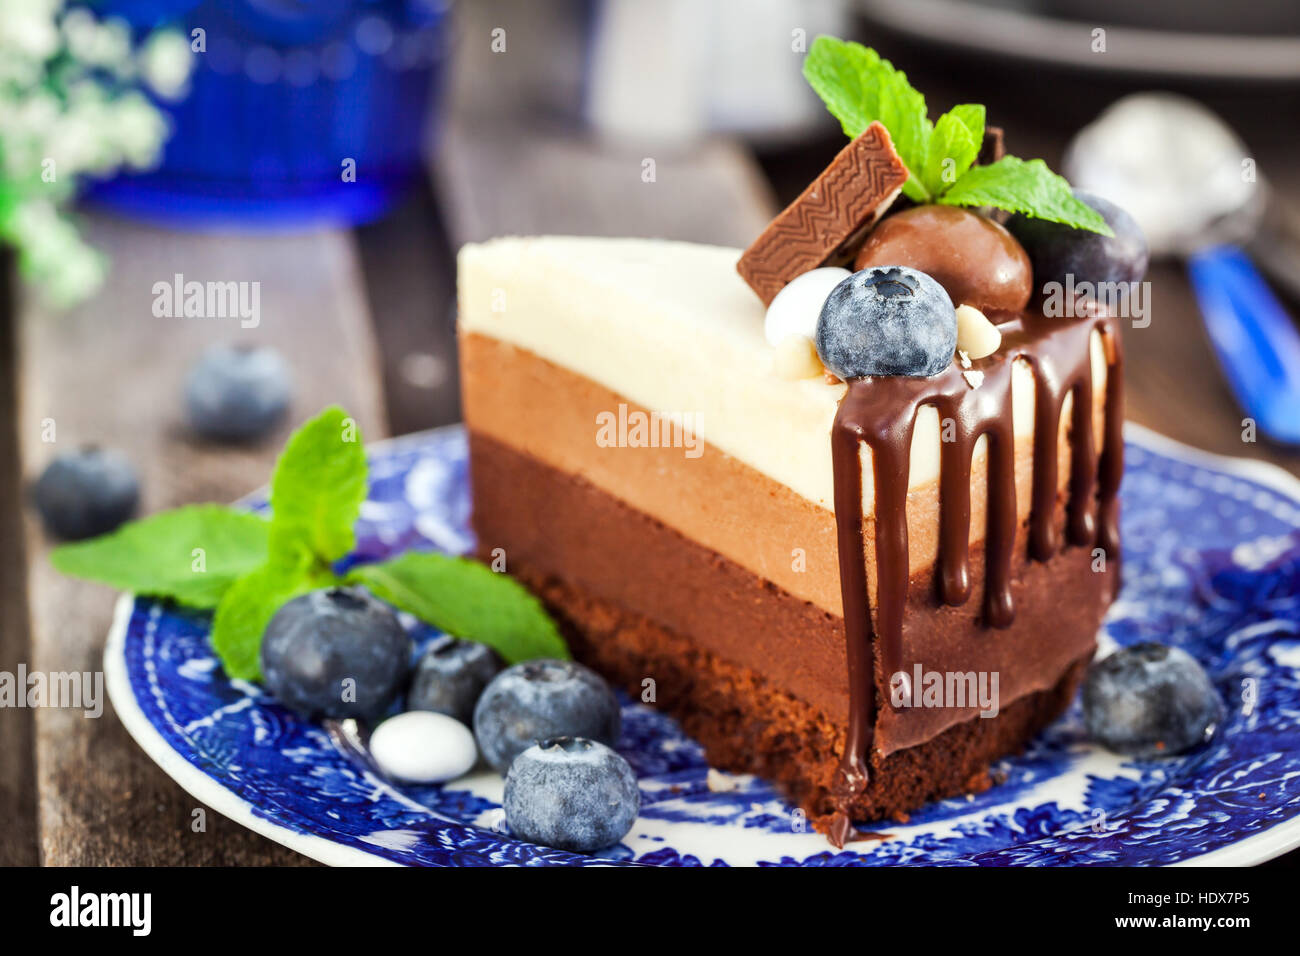 Trozo de pastel delicioso mousse de chocolate tres decorado con arándanos frescos, menta y dulces. Foto de stock